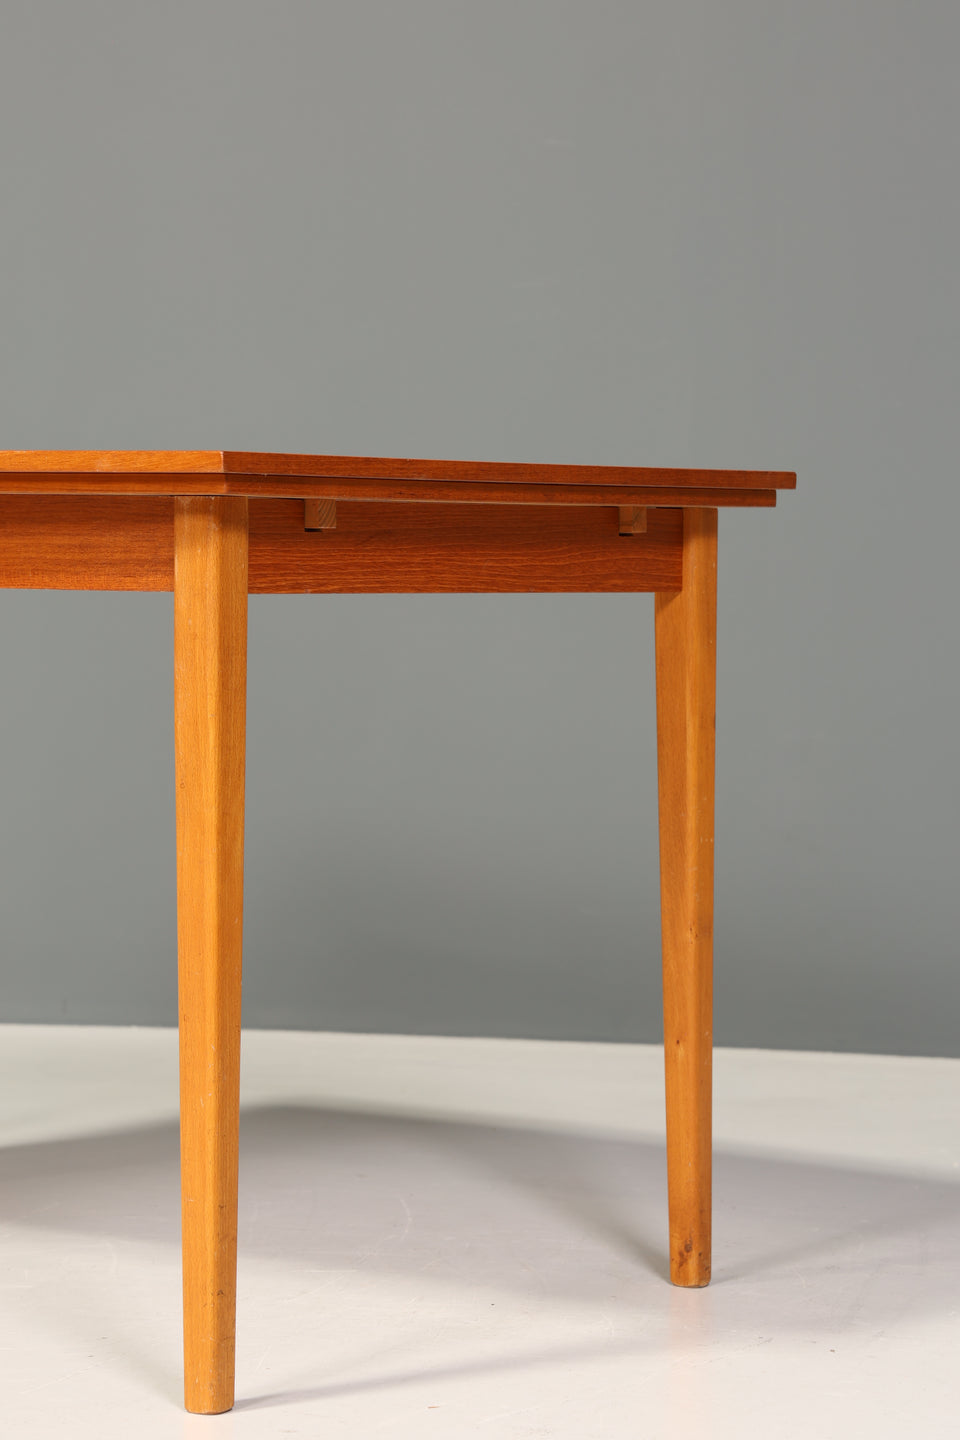 Wunderschöner Mid Century Esstisch Teak Holz Danish Design Tisch ausziehbarer Küchentisch 60er Jahre Tisch